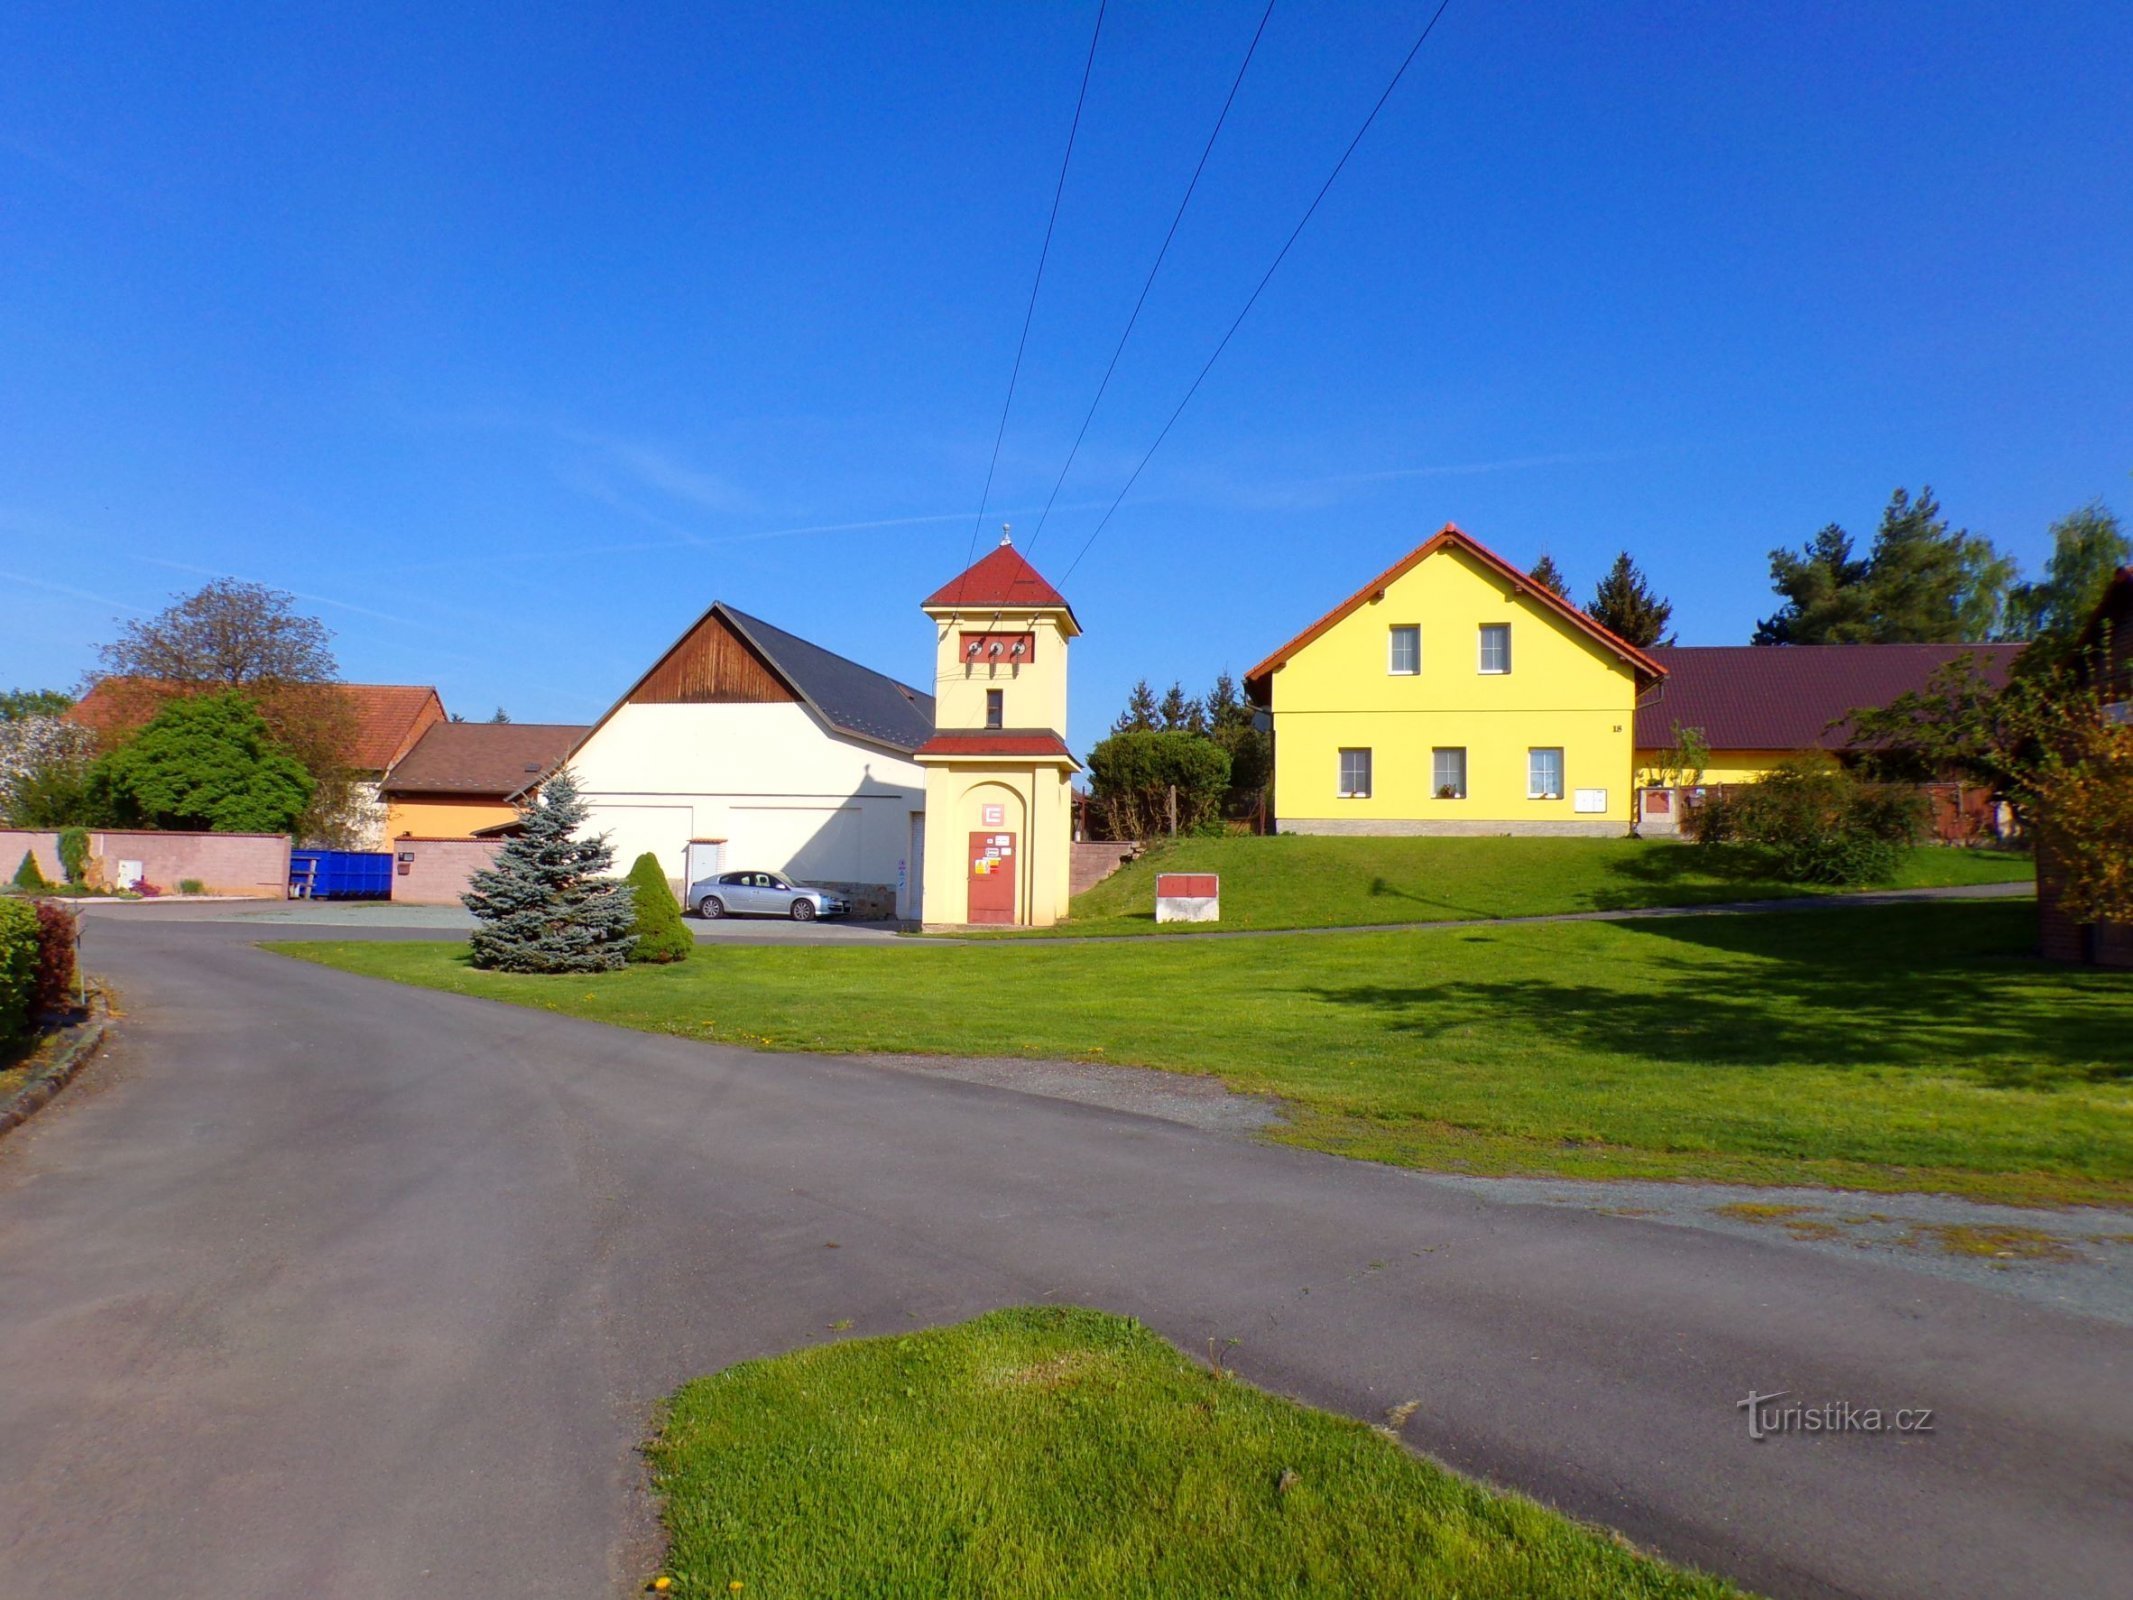 En del av byn (Čáslavky, 8.5.2022 maj XNUMX)